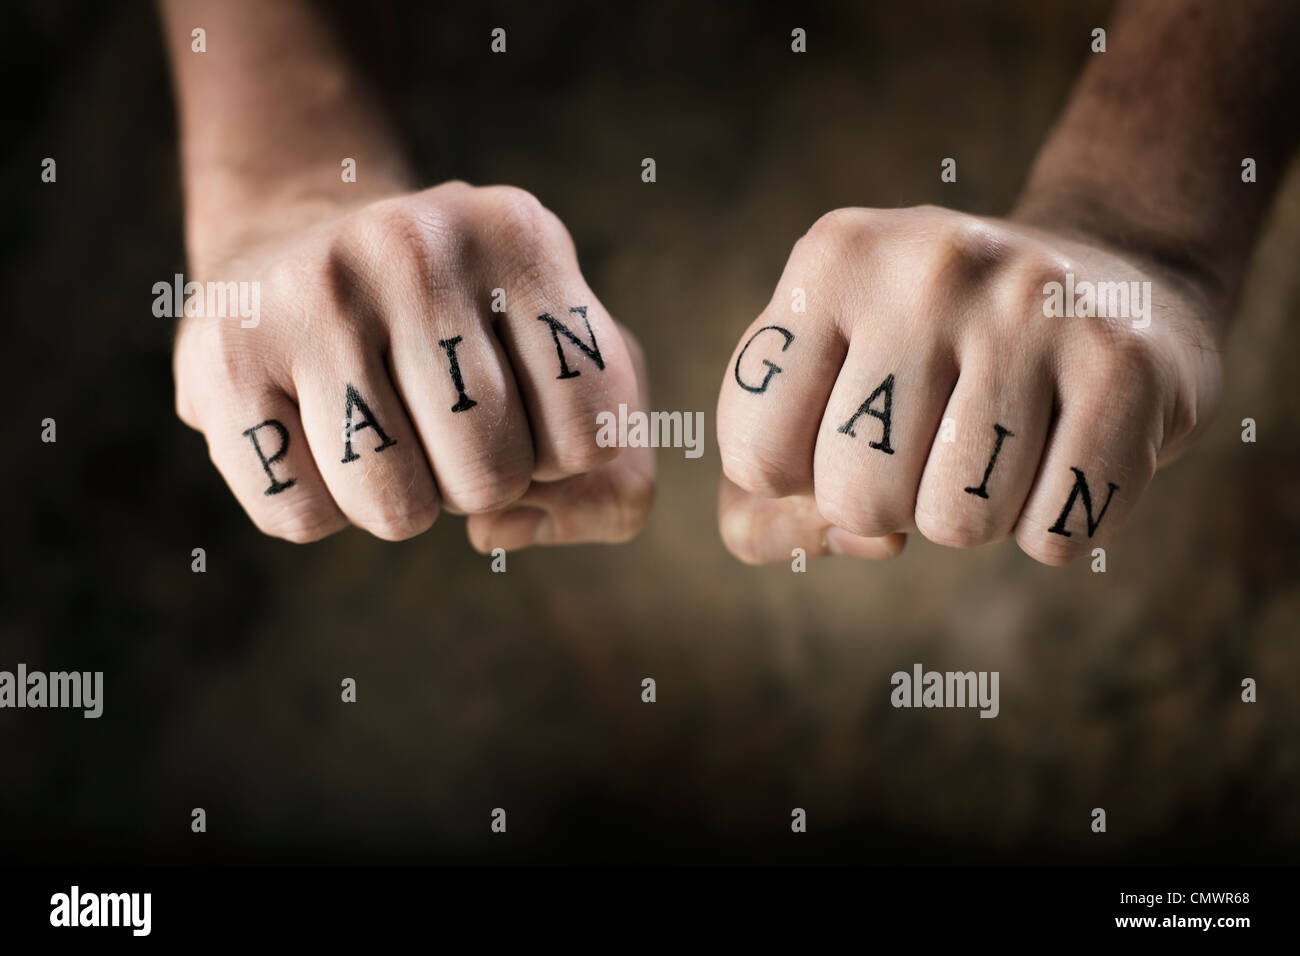 Uomo con finti tatuaggi " dolore " e "" di guadagno sulle mani, con riferimento all'esercizio motto "Nessun dolore, nessun guadagno". Foto Stock